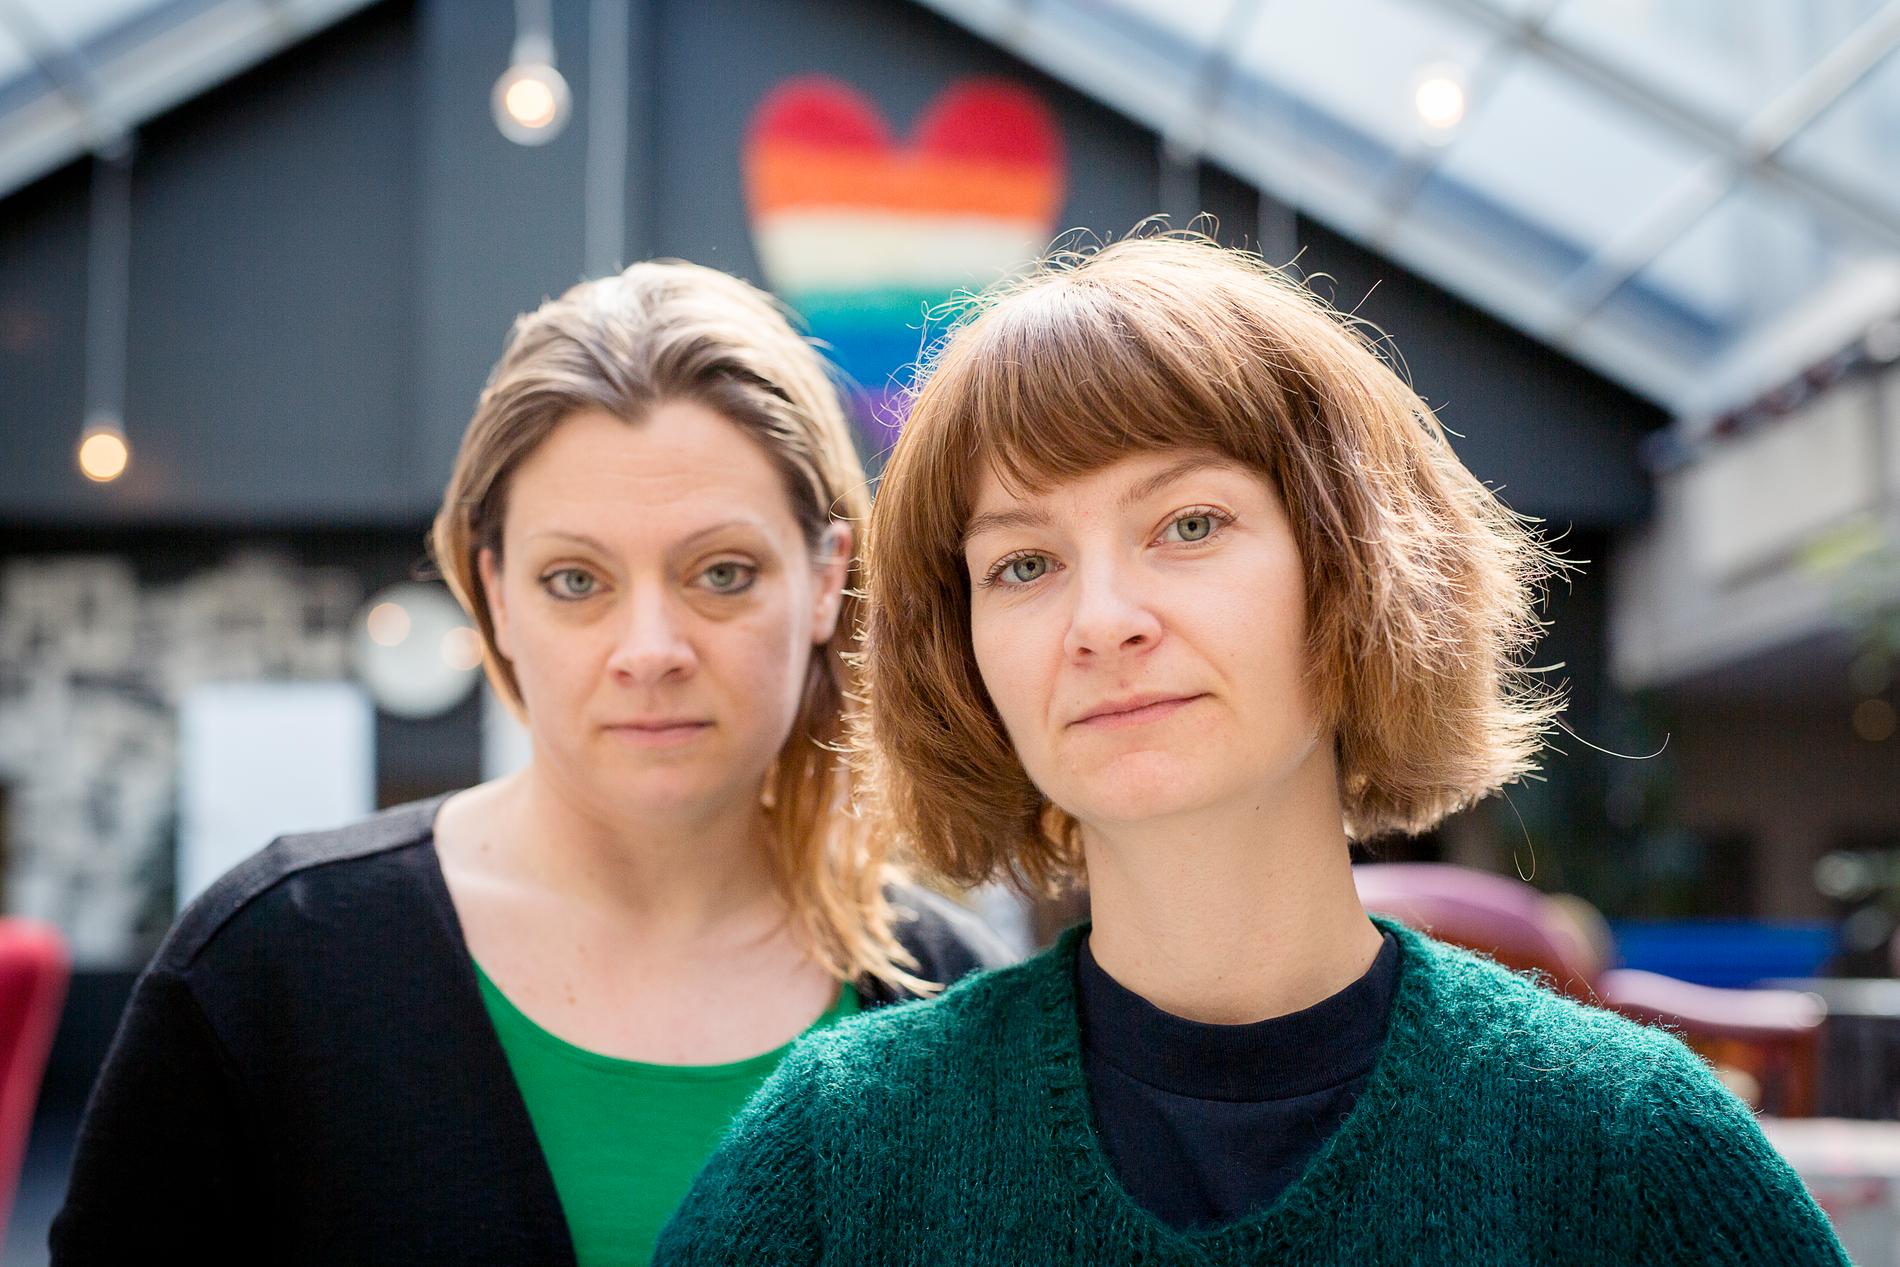 Veronica Hulthén och Anna Nordqvist driver Hbtqfamiljer.se på RFSL Stockholm, ett projekt för att informera och ge rådgivning till hbtq-personer som är eller vill bli föräldrar.